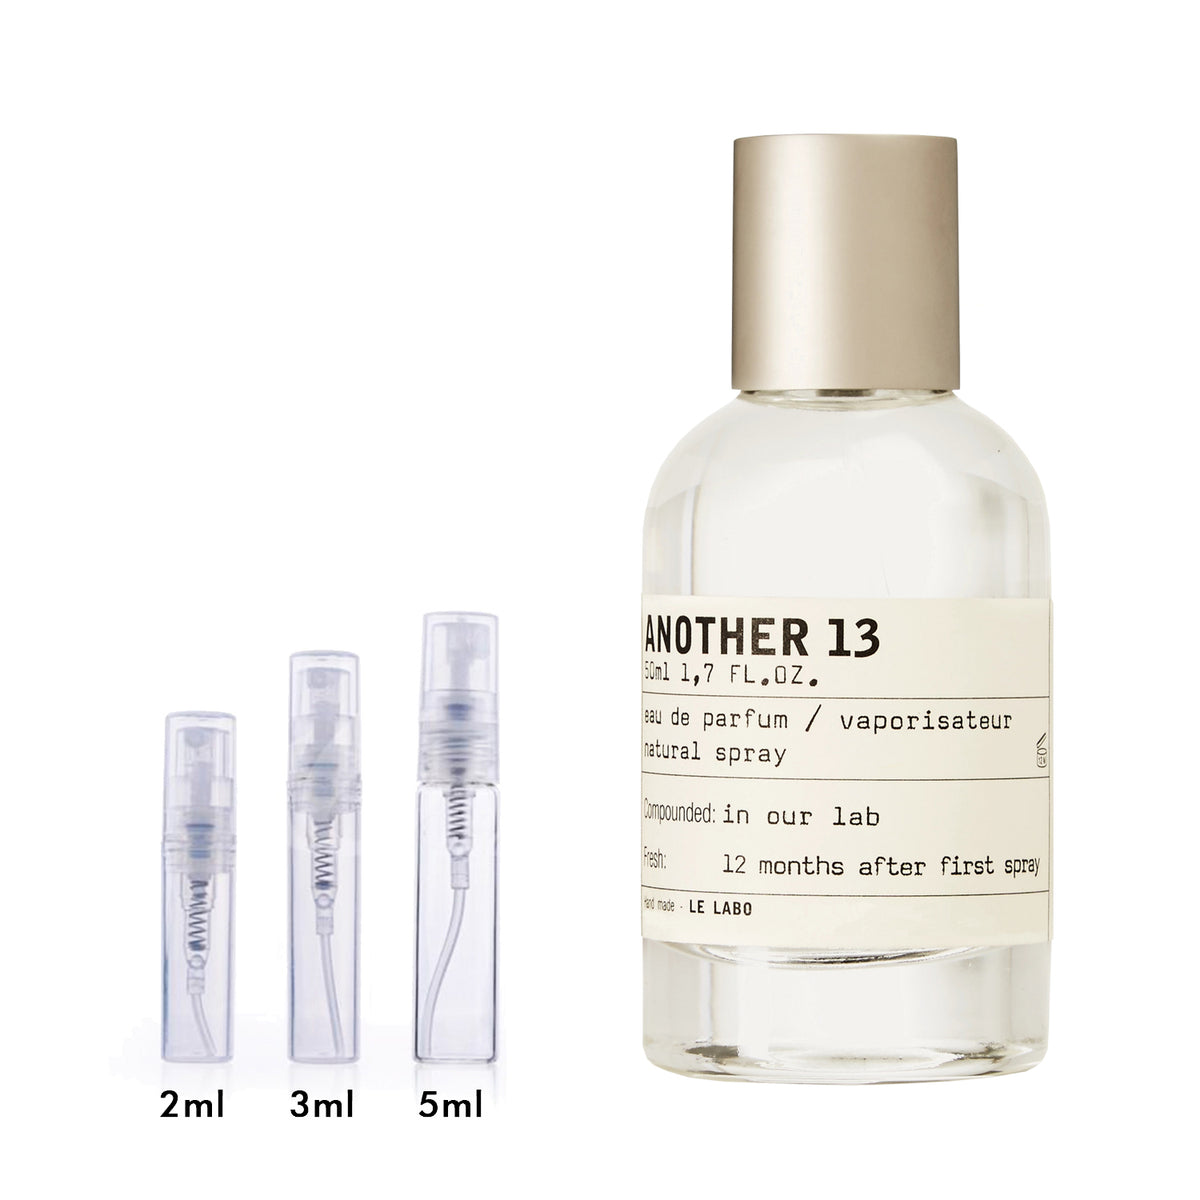 Le Another 13 Eau de Parfum Unisex – DecantX & Cologne Decant Fragrance Samples